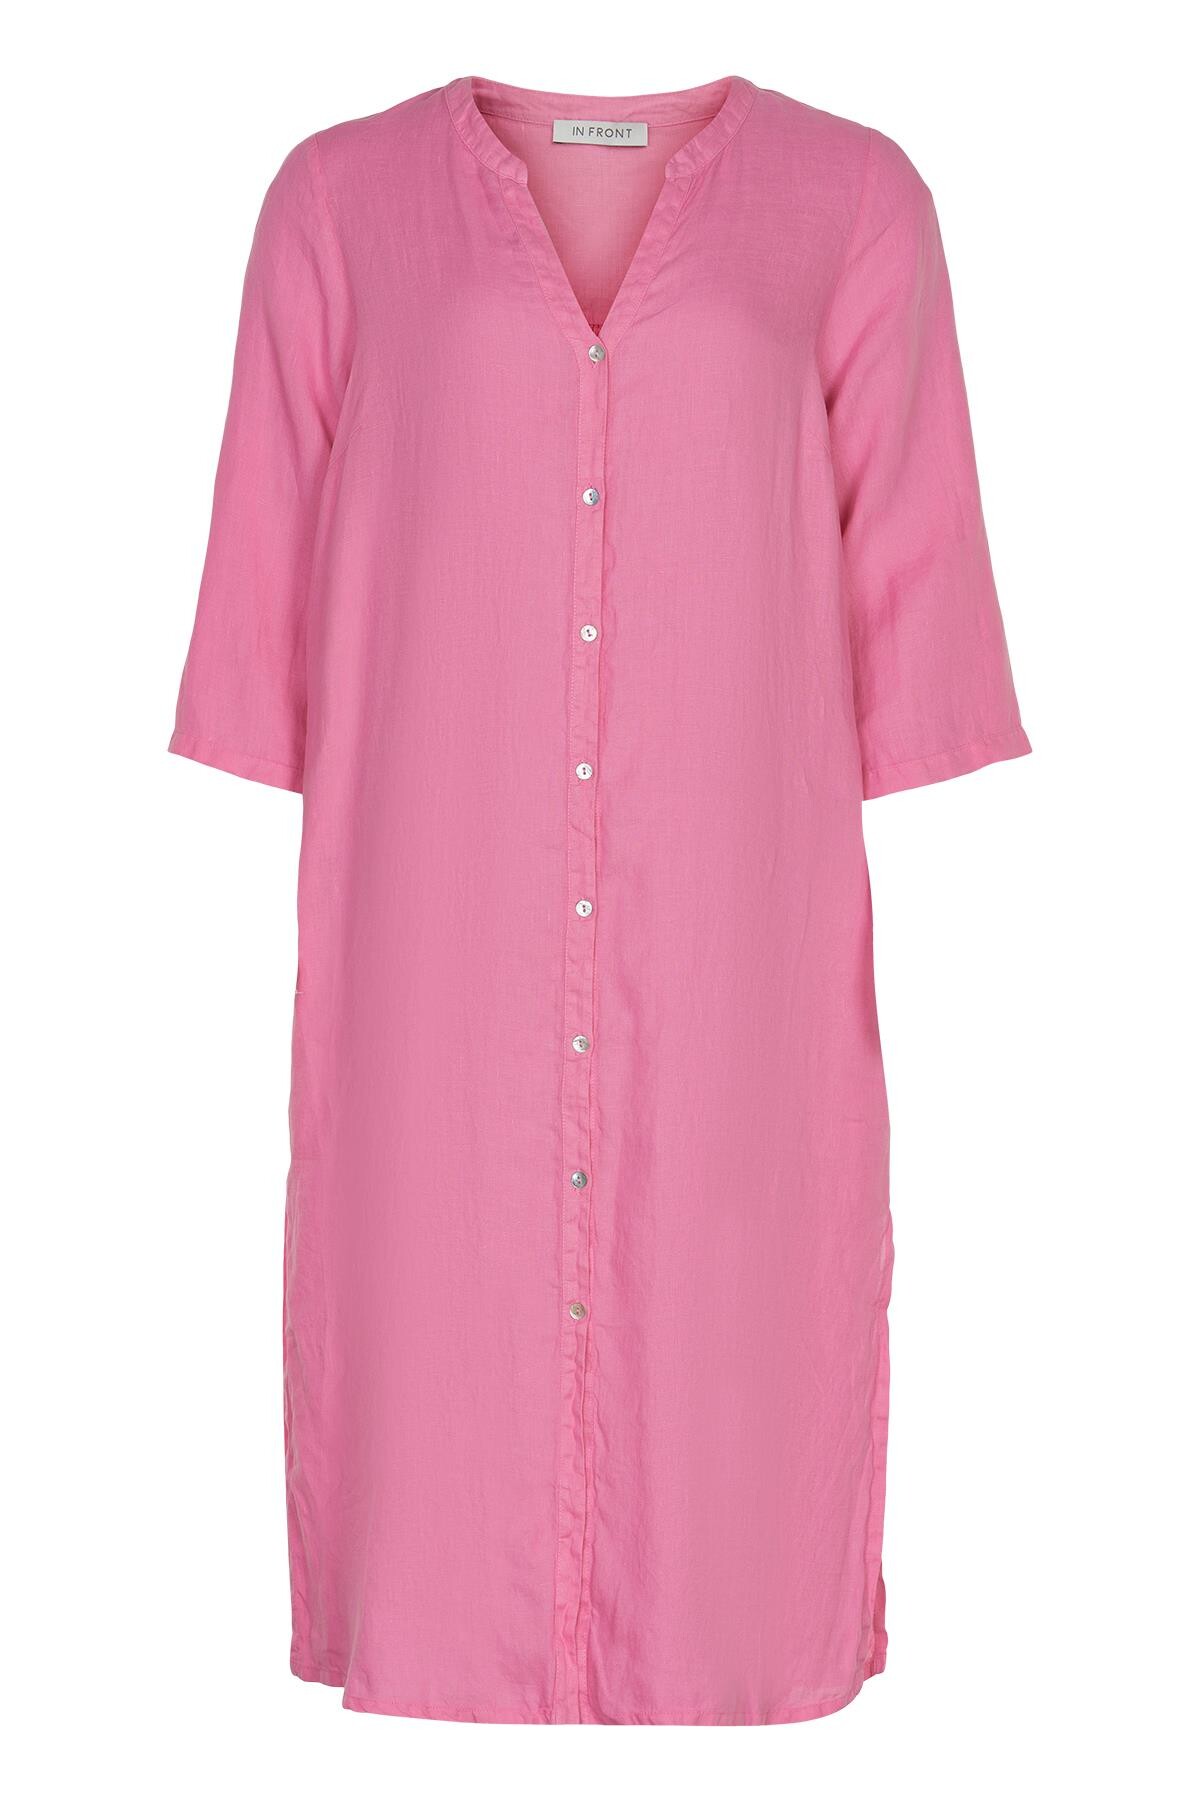 Se IN FRONT Lino Lang Skjortekjole, Farve: Pink, Størrelse: M, Dame hos Infront Women